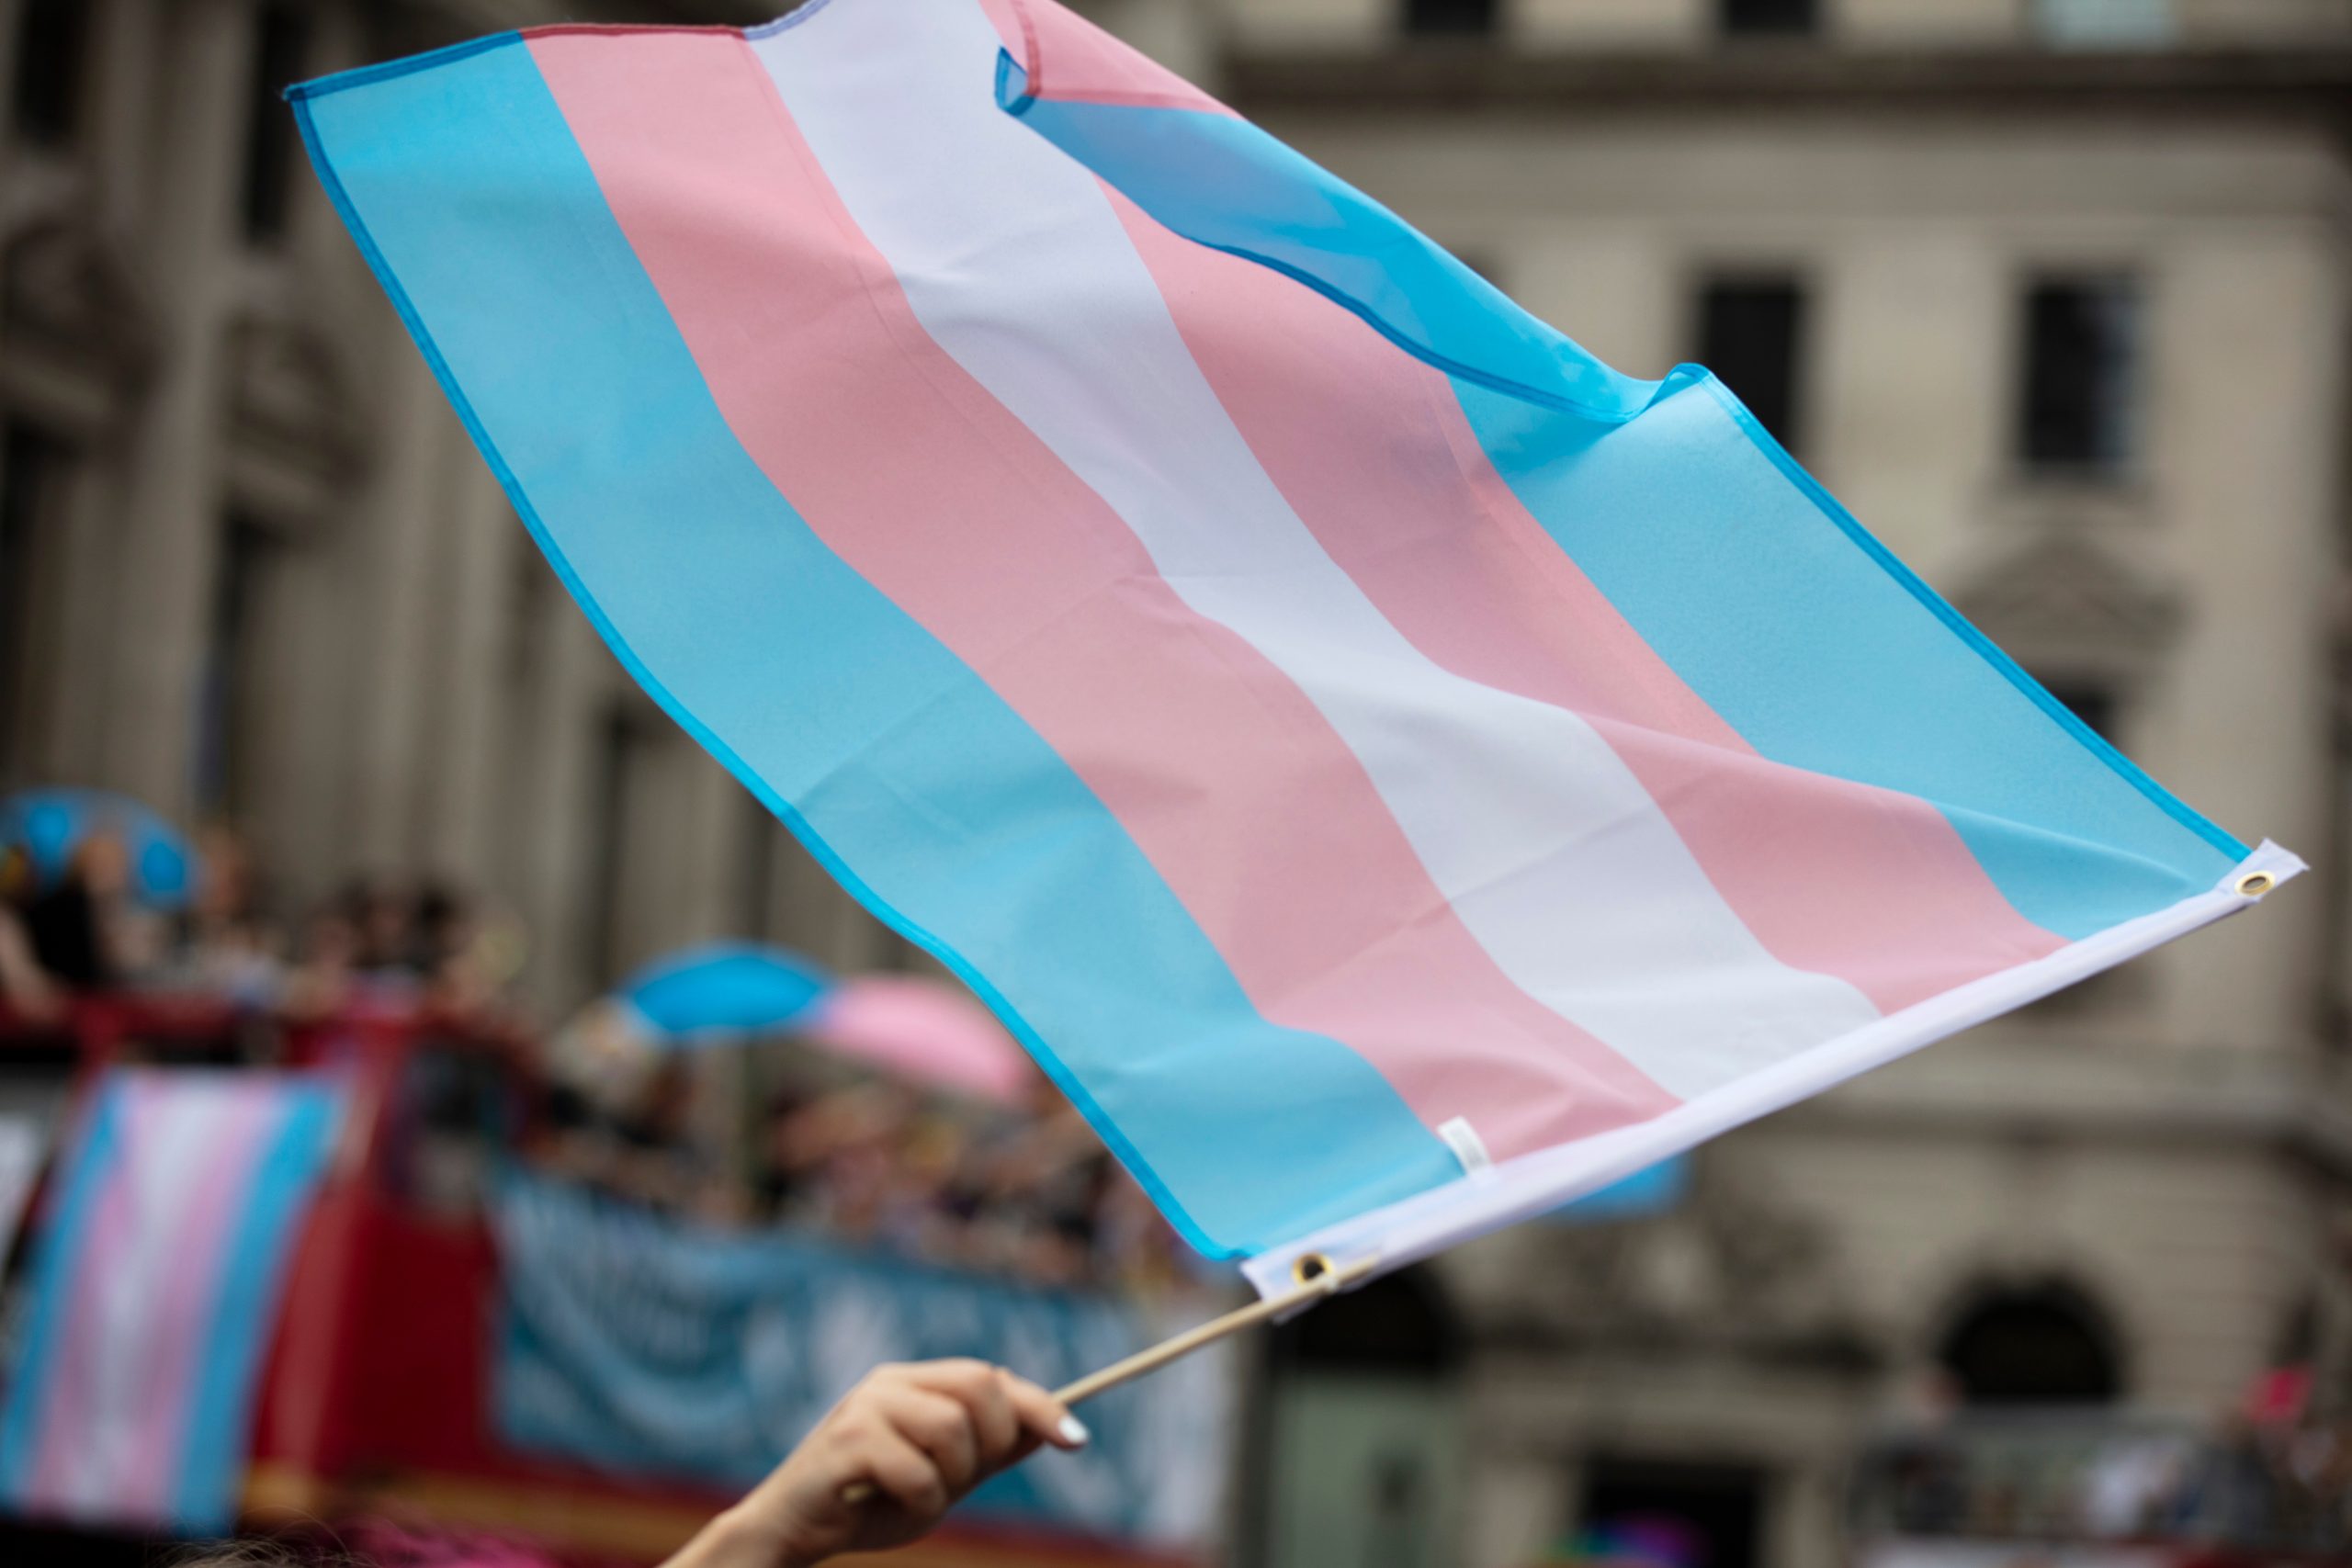 Gesetz zur Selbstbestimmung für trans Menschen scheitert erneut